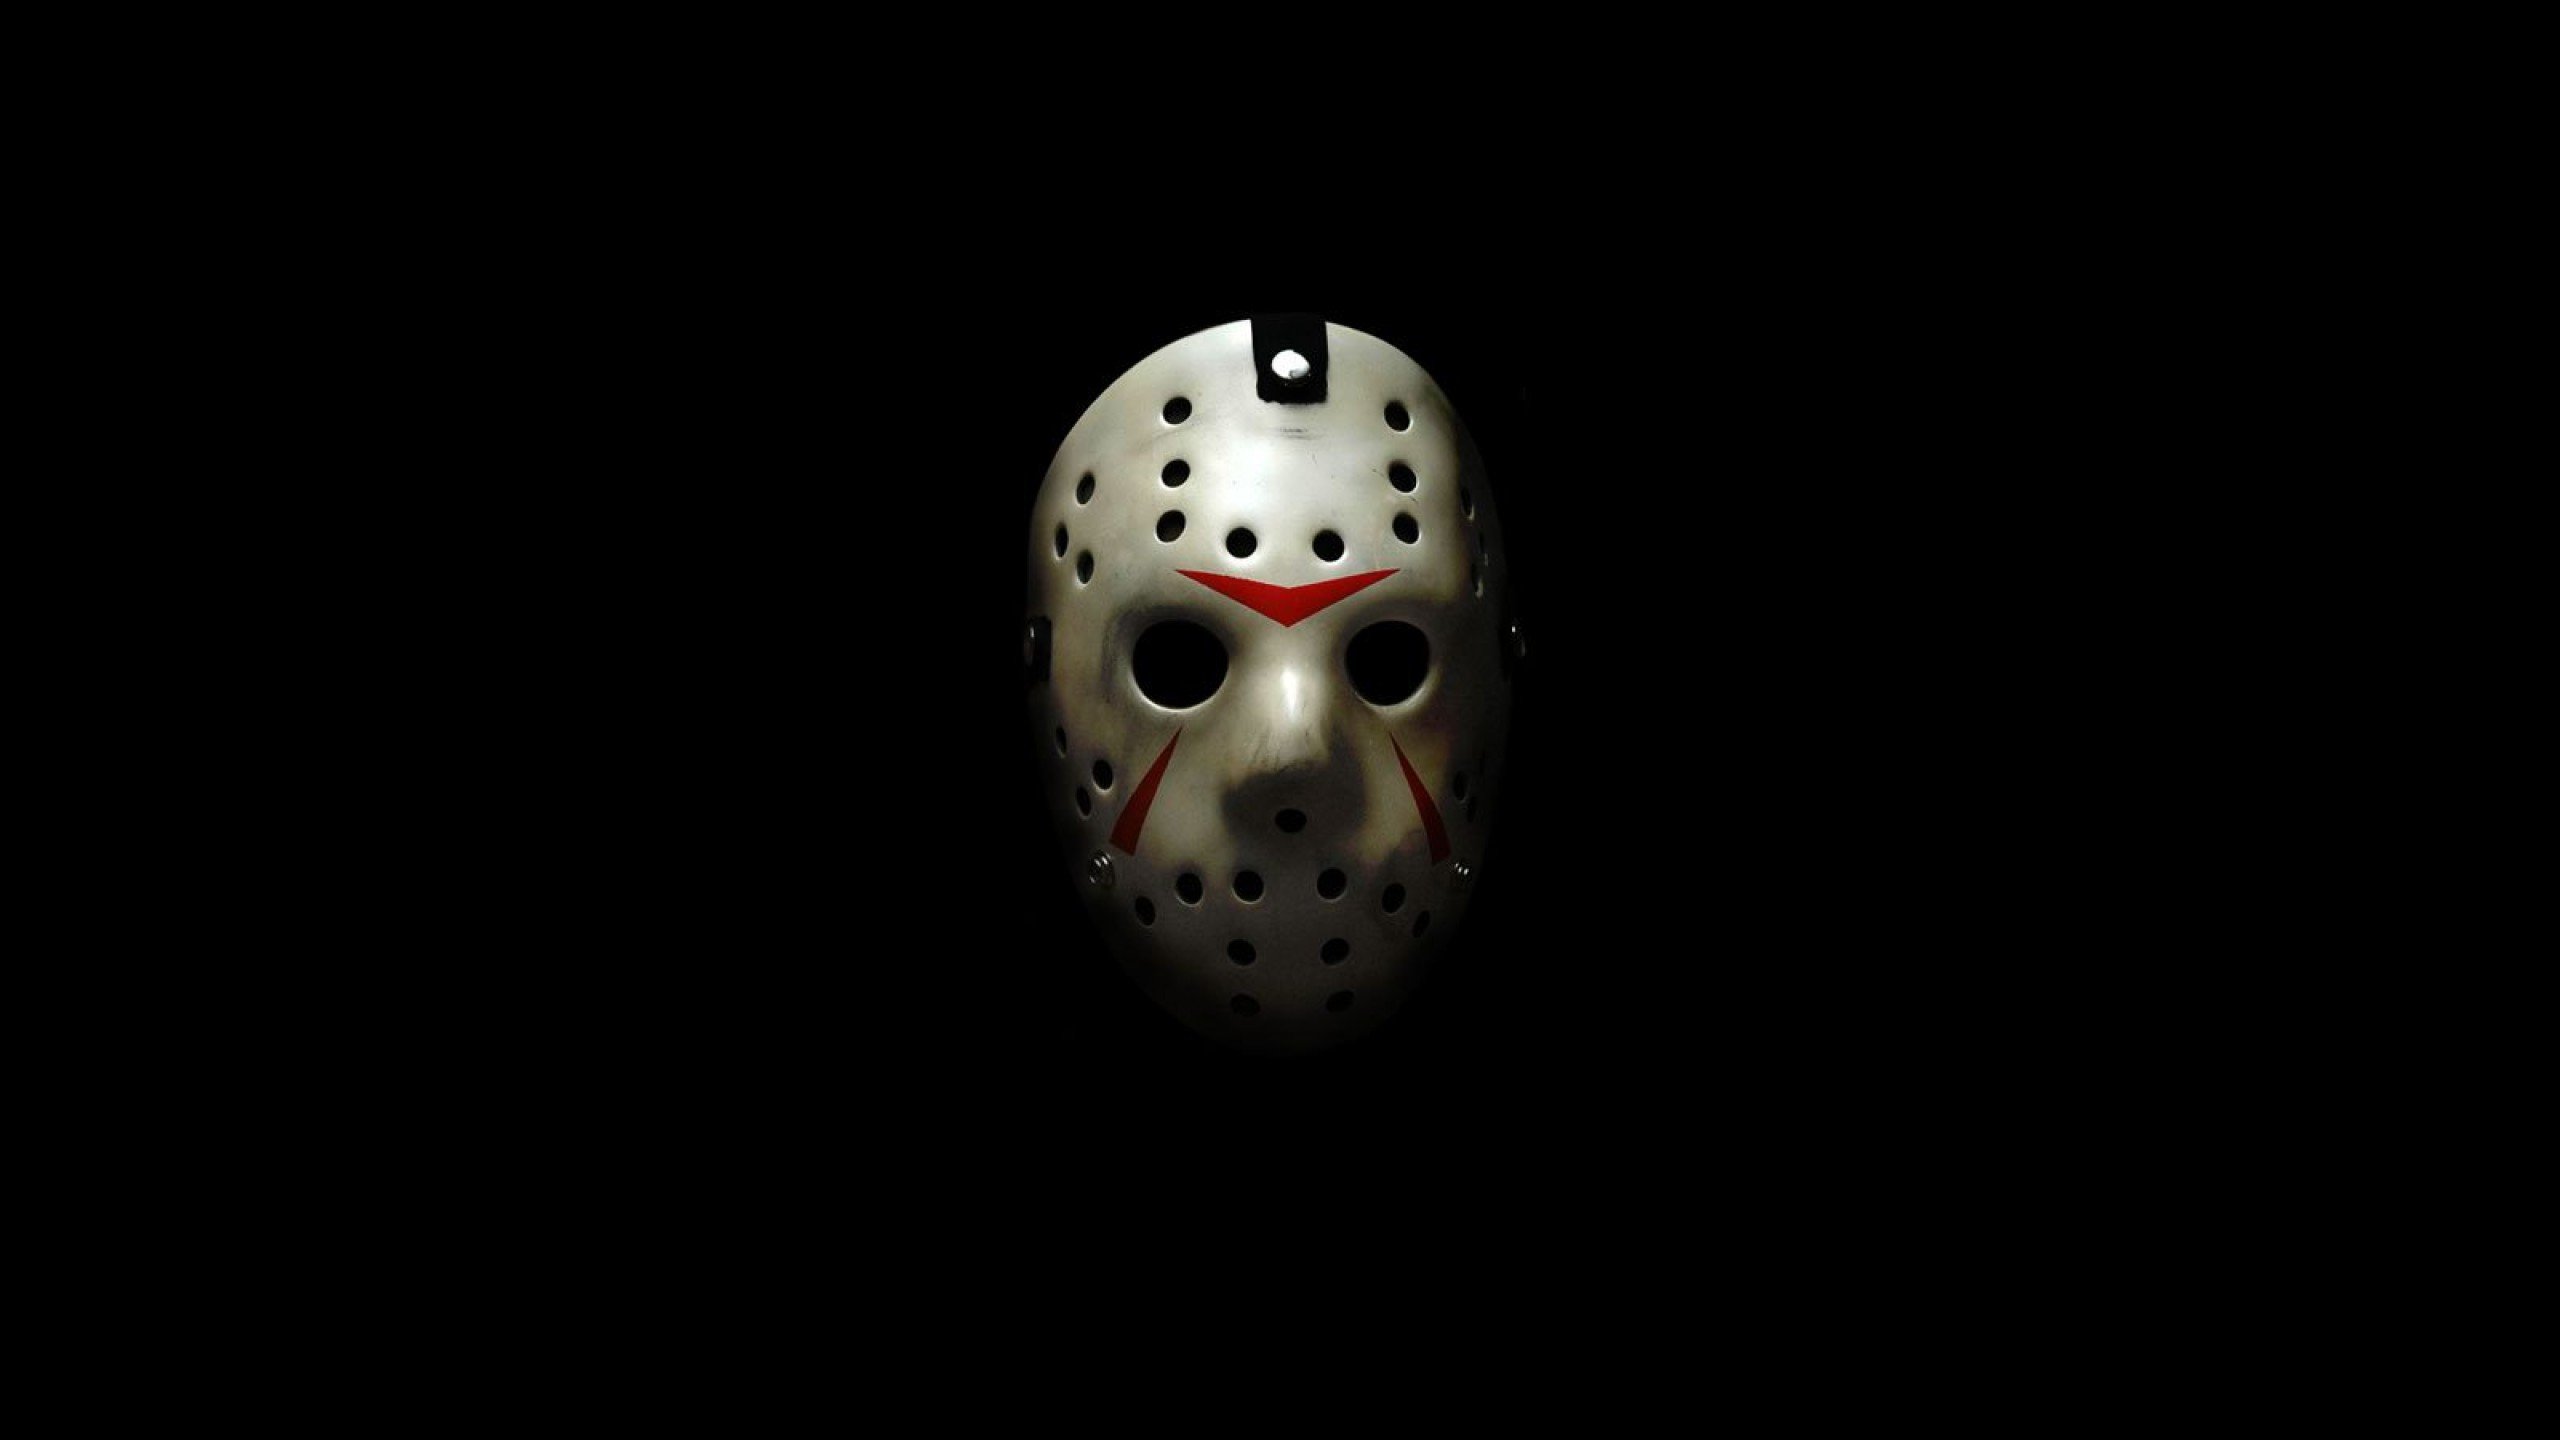 FRIDAY 13TH dark horror violence killer jason thriller fridayhorror halloween mask wallpaperx1440